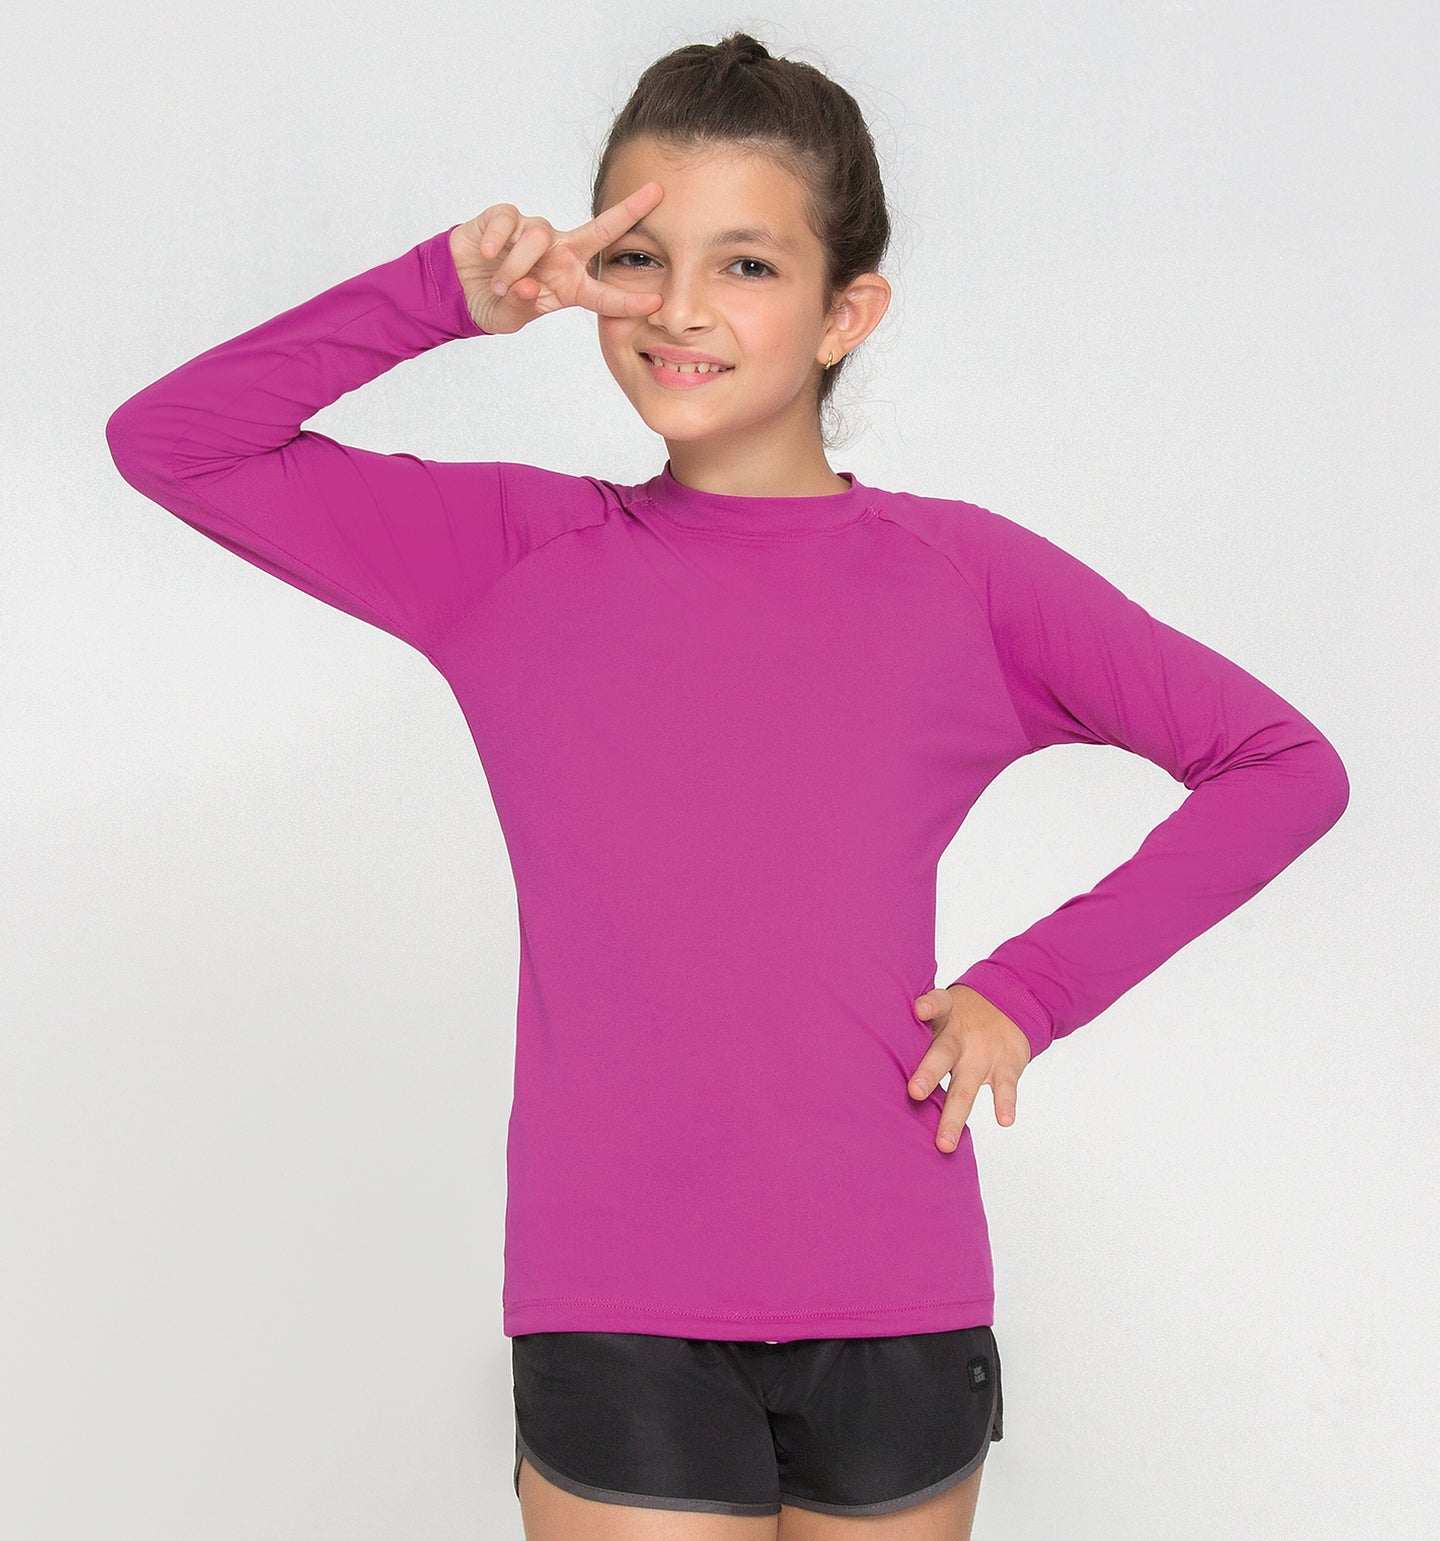 Kids UVPRO Rash Guard Long Sleeve Pink UPF50+